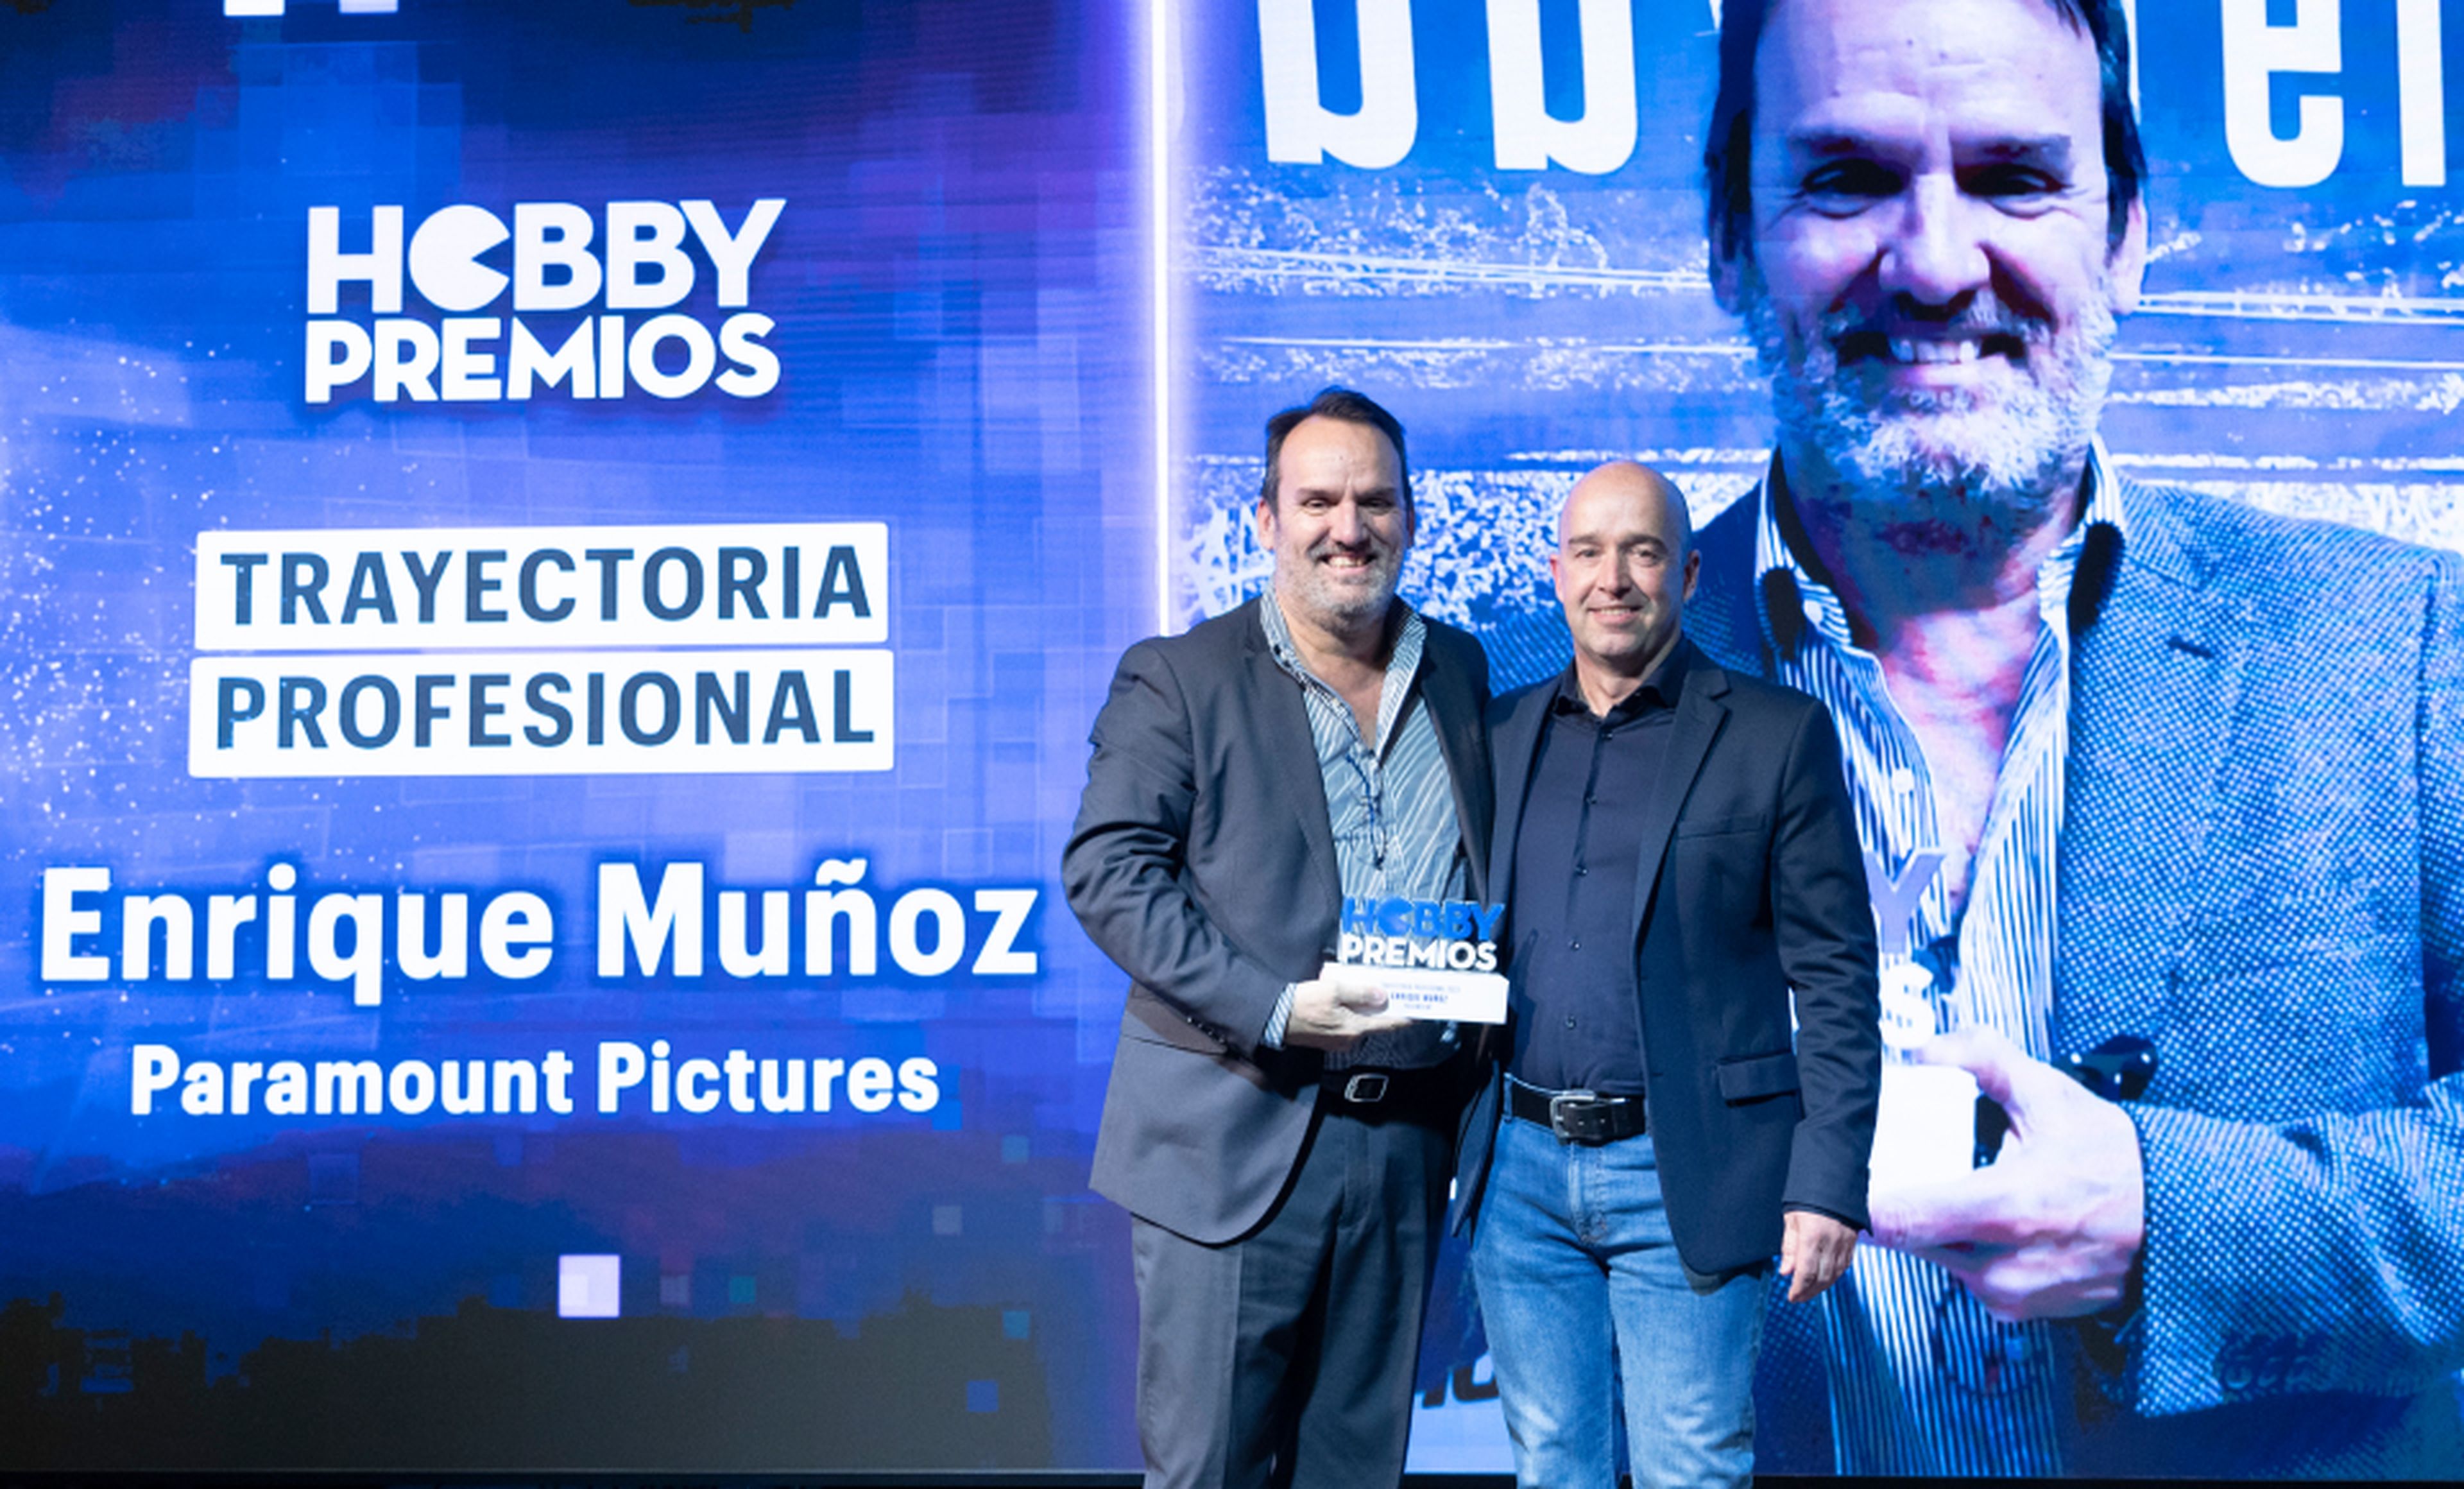 De izquierda a derecha: Enrique Muñoz, director de comunicación de Paramount recoge el premio a la Trayectoria Profesional de manos de Javier Abad, Business Solutions Senior Editor de Axel Springer.